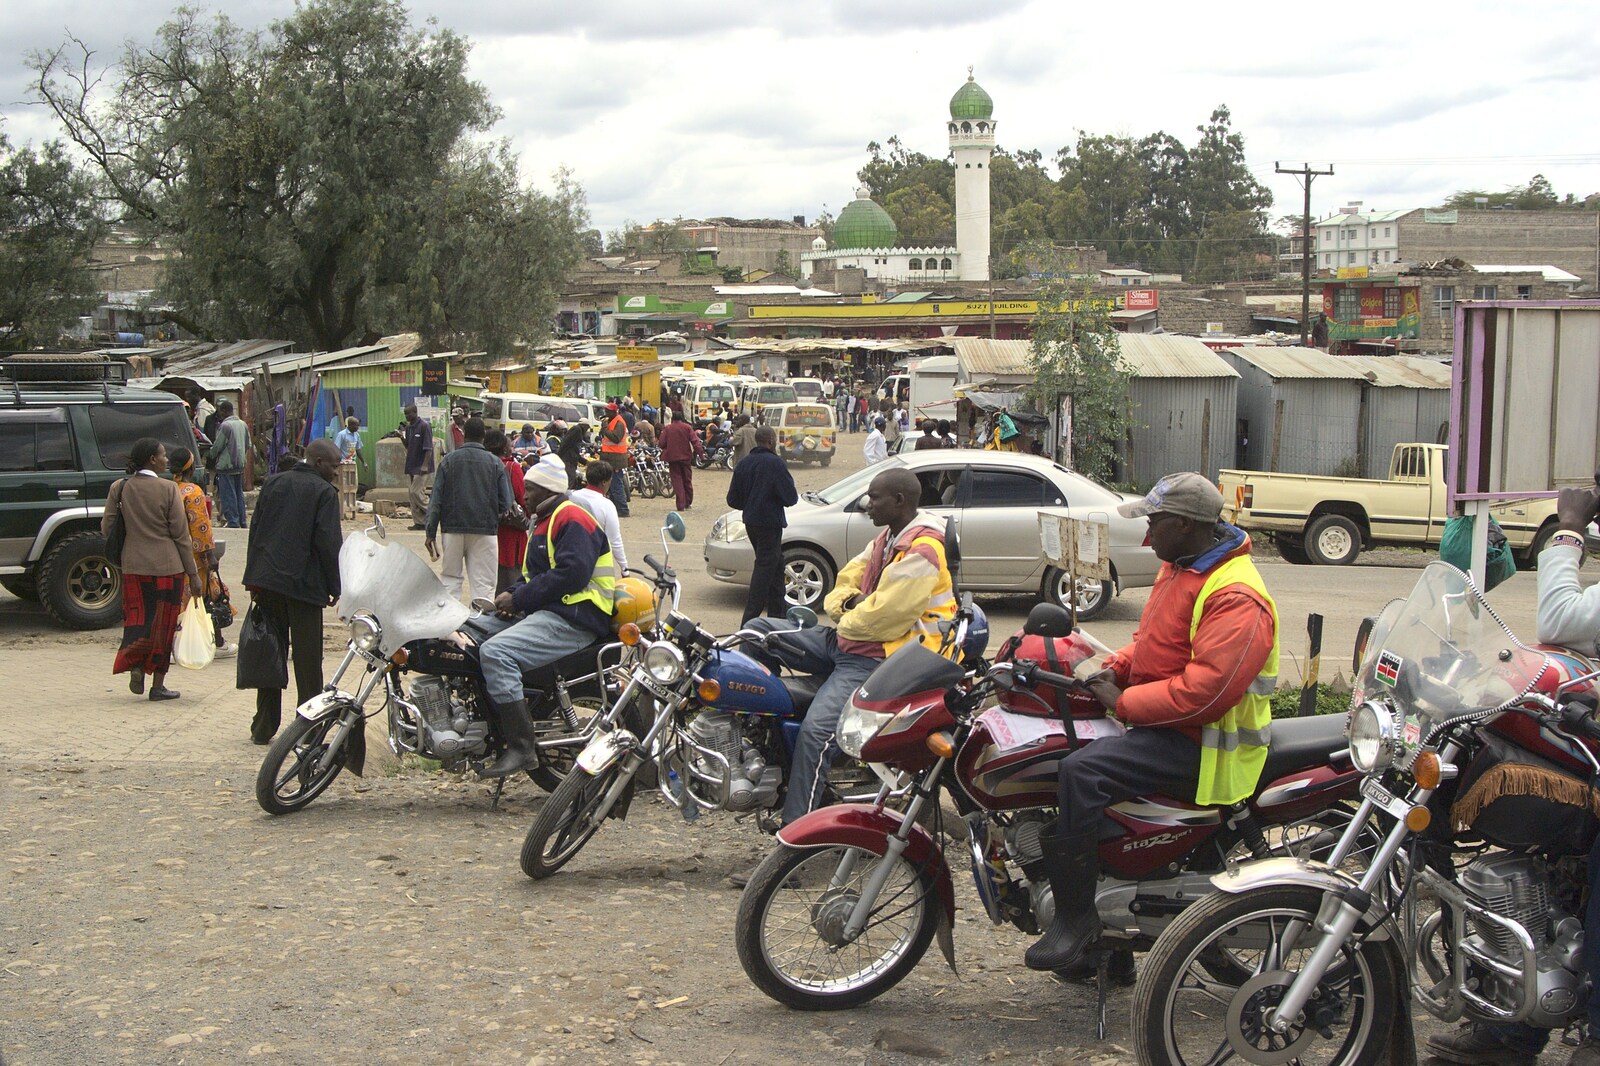 A load of motorbikes from Nairobi and the Road to Maasai Mara, Kenya, Africa - 1st November 2010